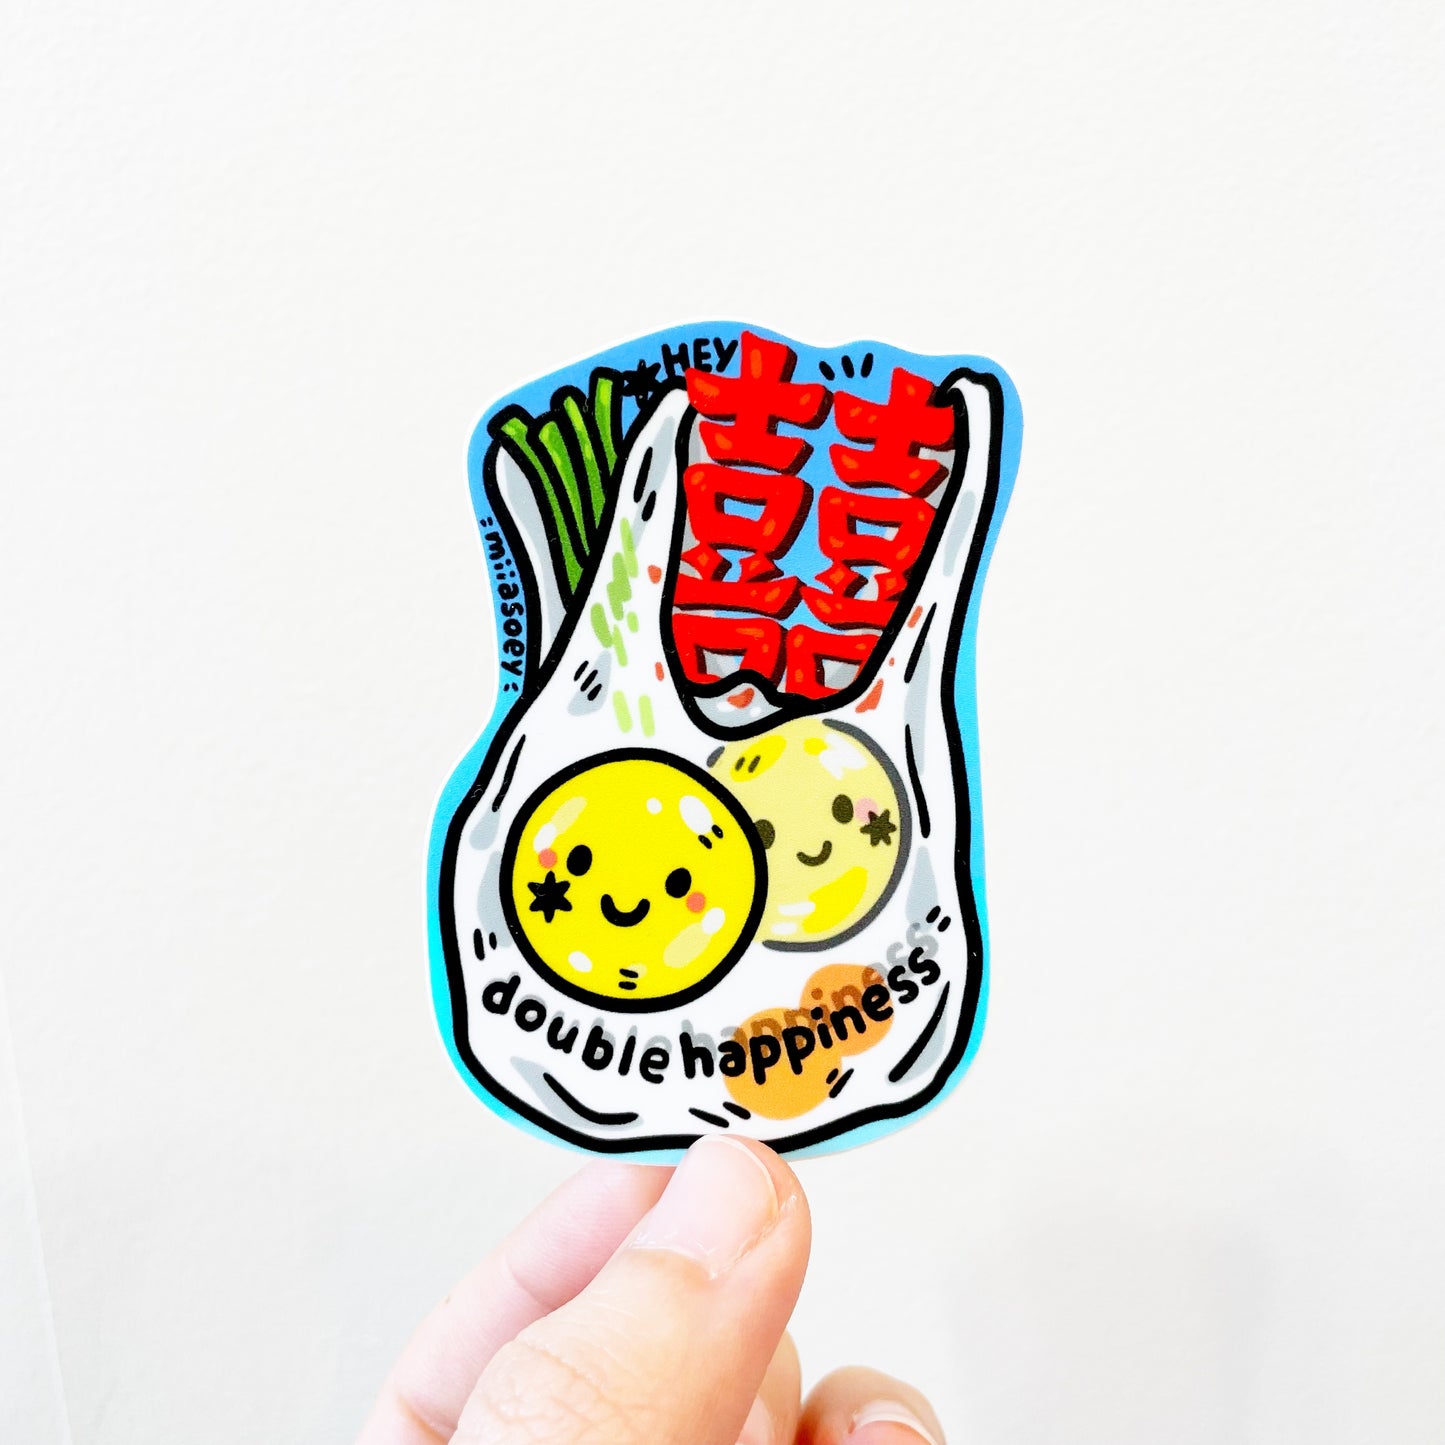 miiasoey: Grocery Stickers